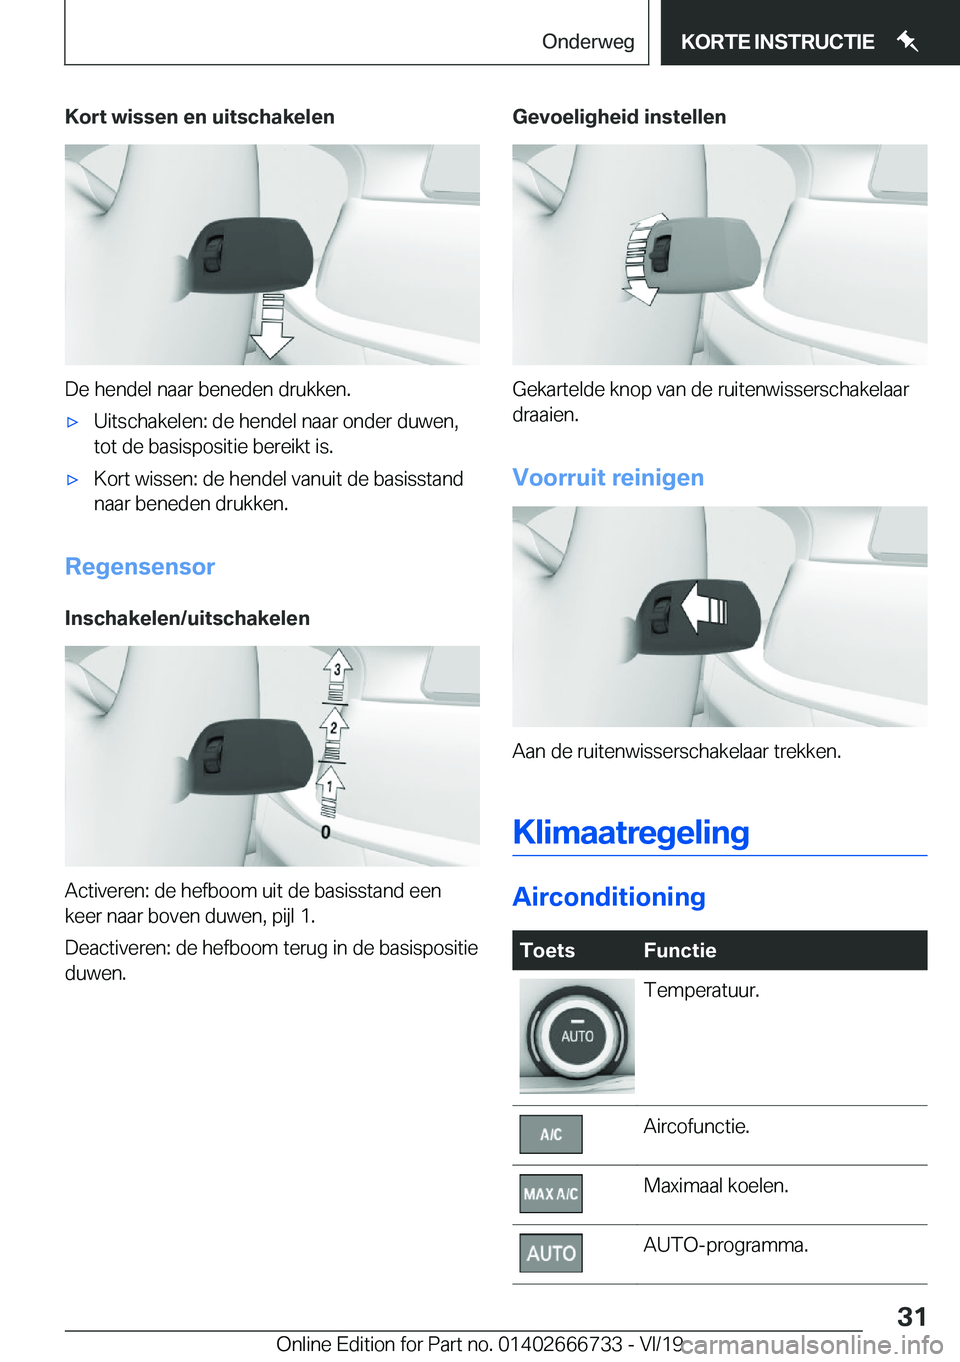 BMW M5 2020  Instructieboekjes (in Dutch) �K�o�r�t��w�i�s�s�e�n��e�n��u�i�t�s�c�h�a�k�e�l�e�n
�D�e��h�e�n�d�e�l��n�a�a�r��b�e�n�e�d�e�n��d�r�u�k�k�e�n�.
'x�U�i�t�s�c�h�a�k�e�l�e�n�:��d�e��h�e�n�d�e�l��n�a�a�r��o�n�d�e�r��d�u�w